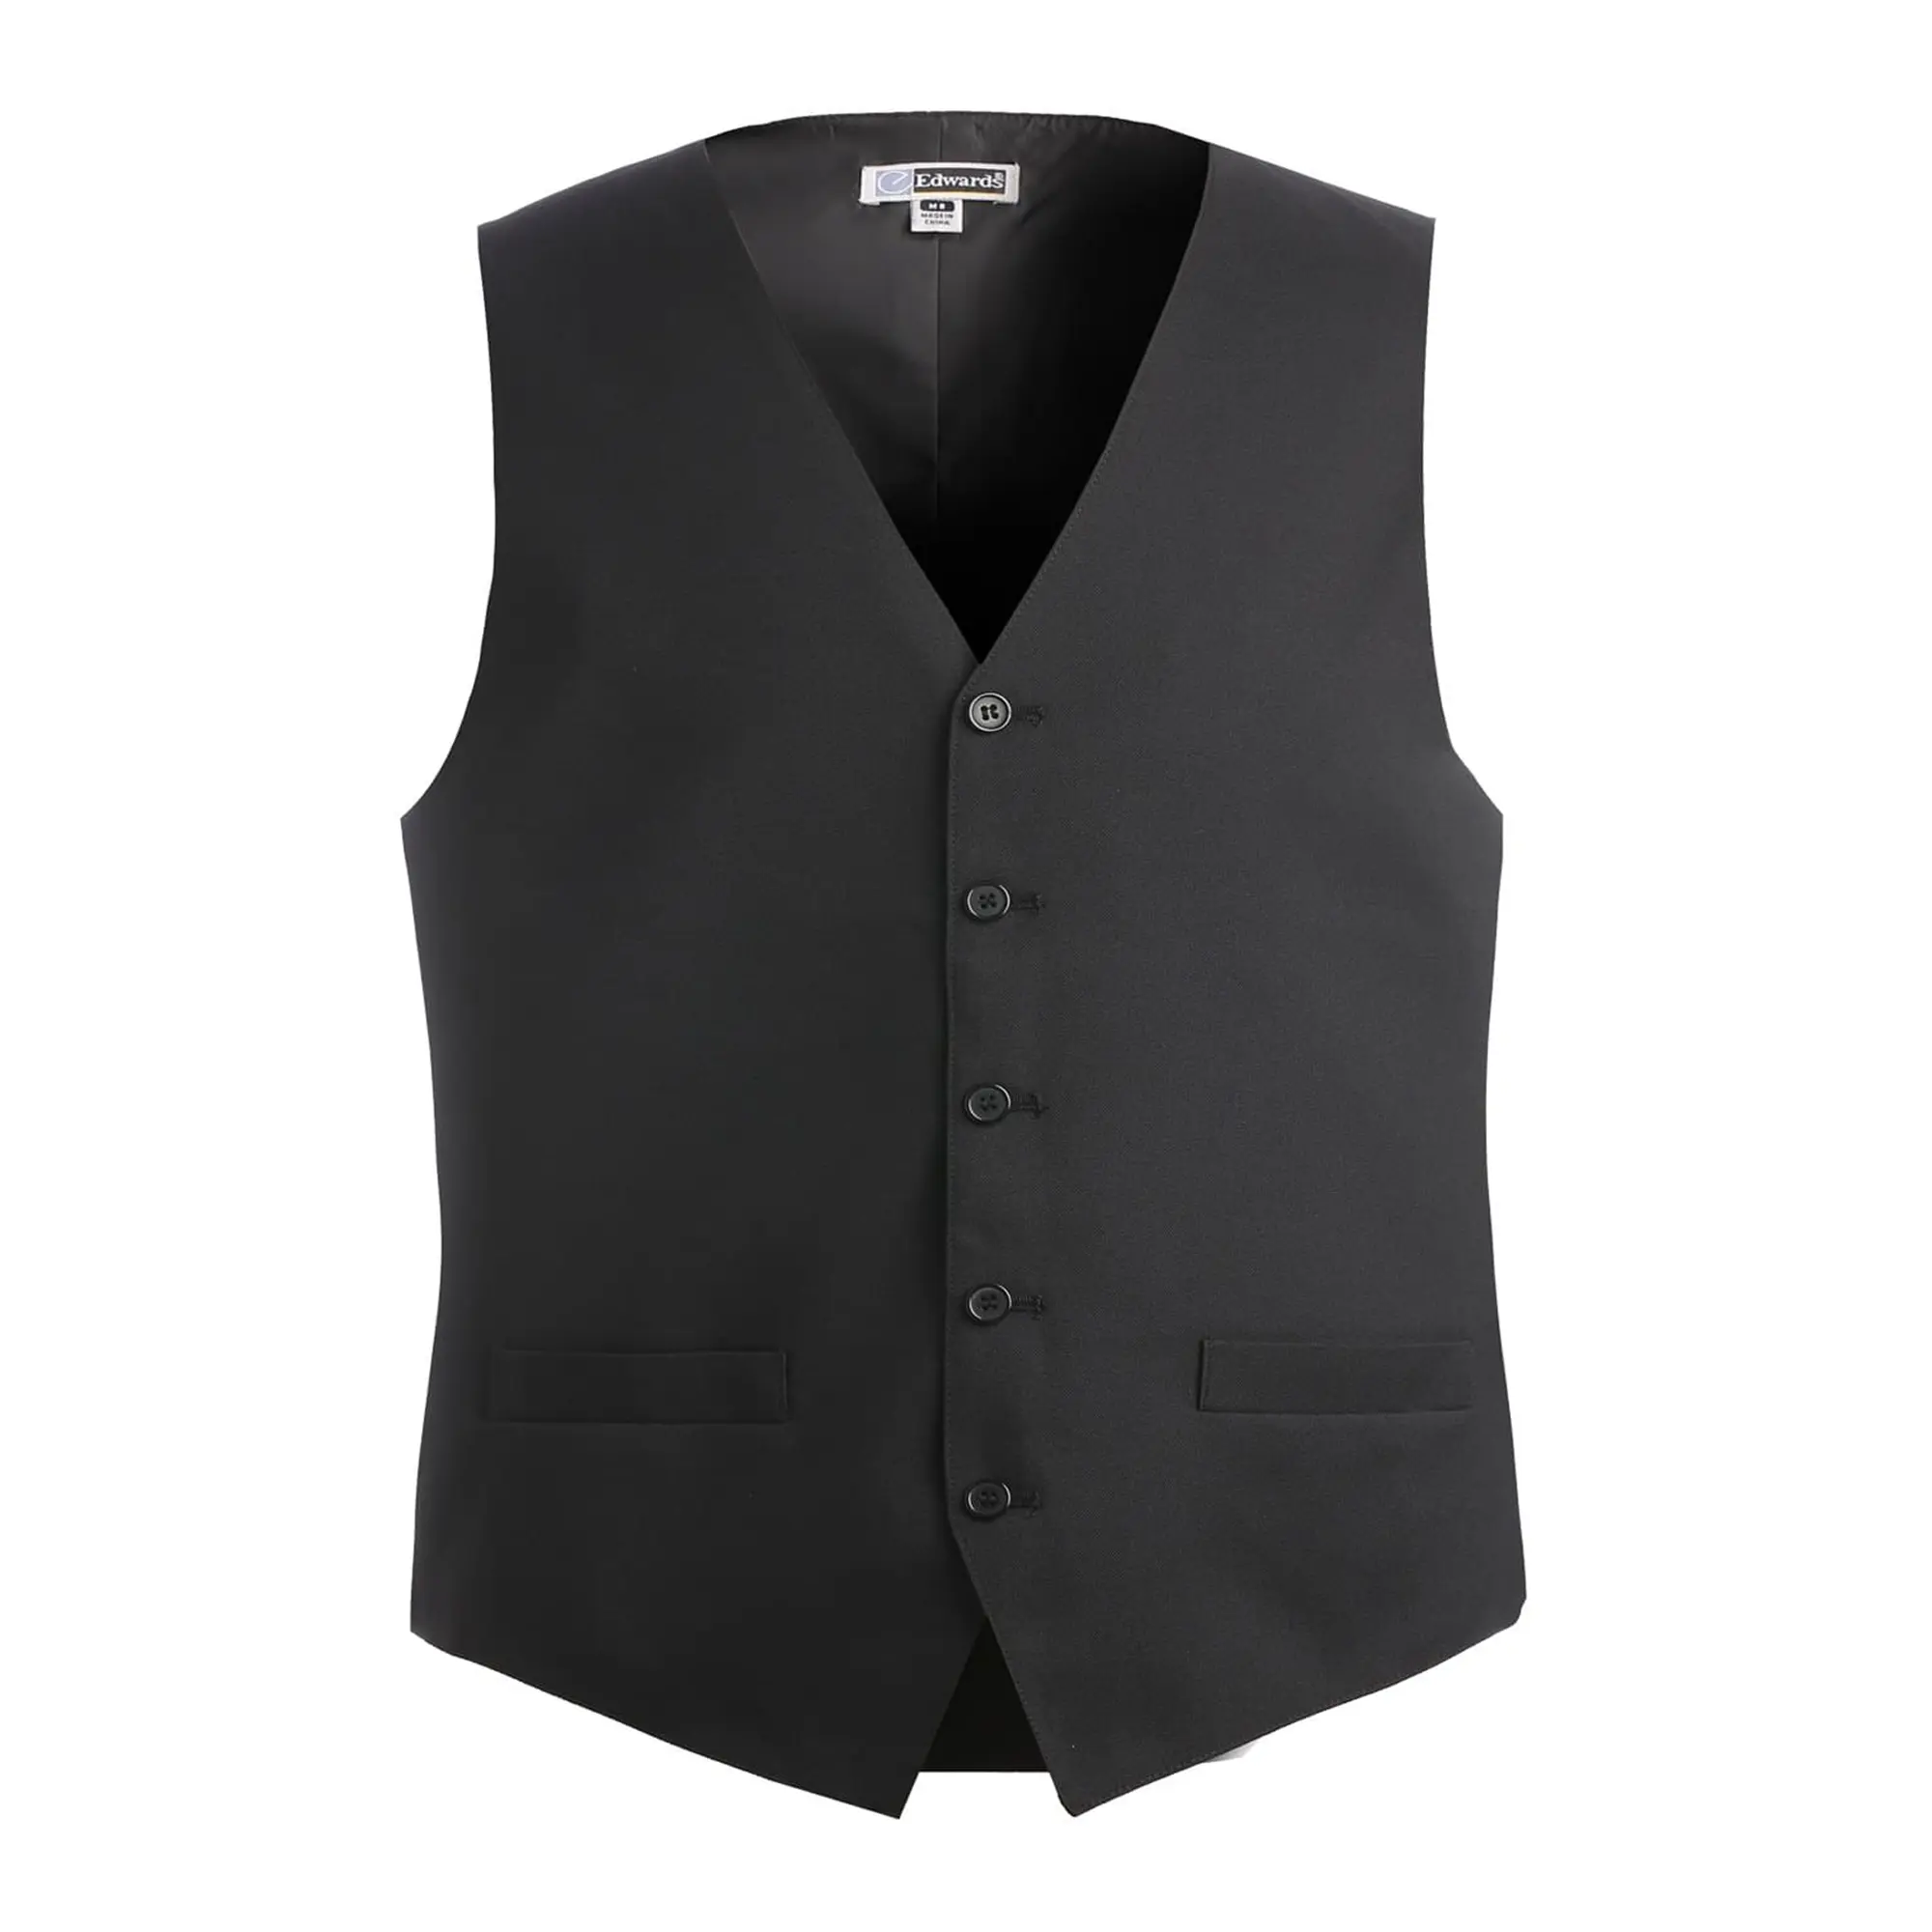 Black essential polyester vest